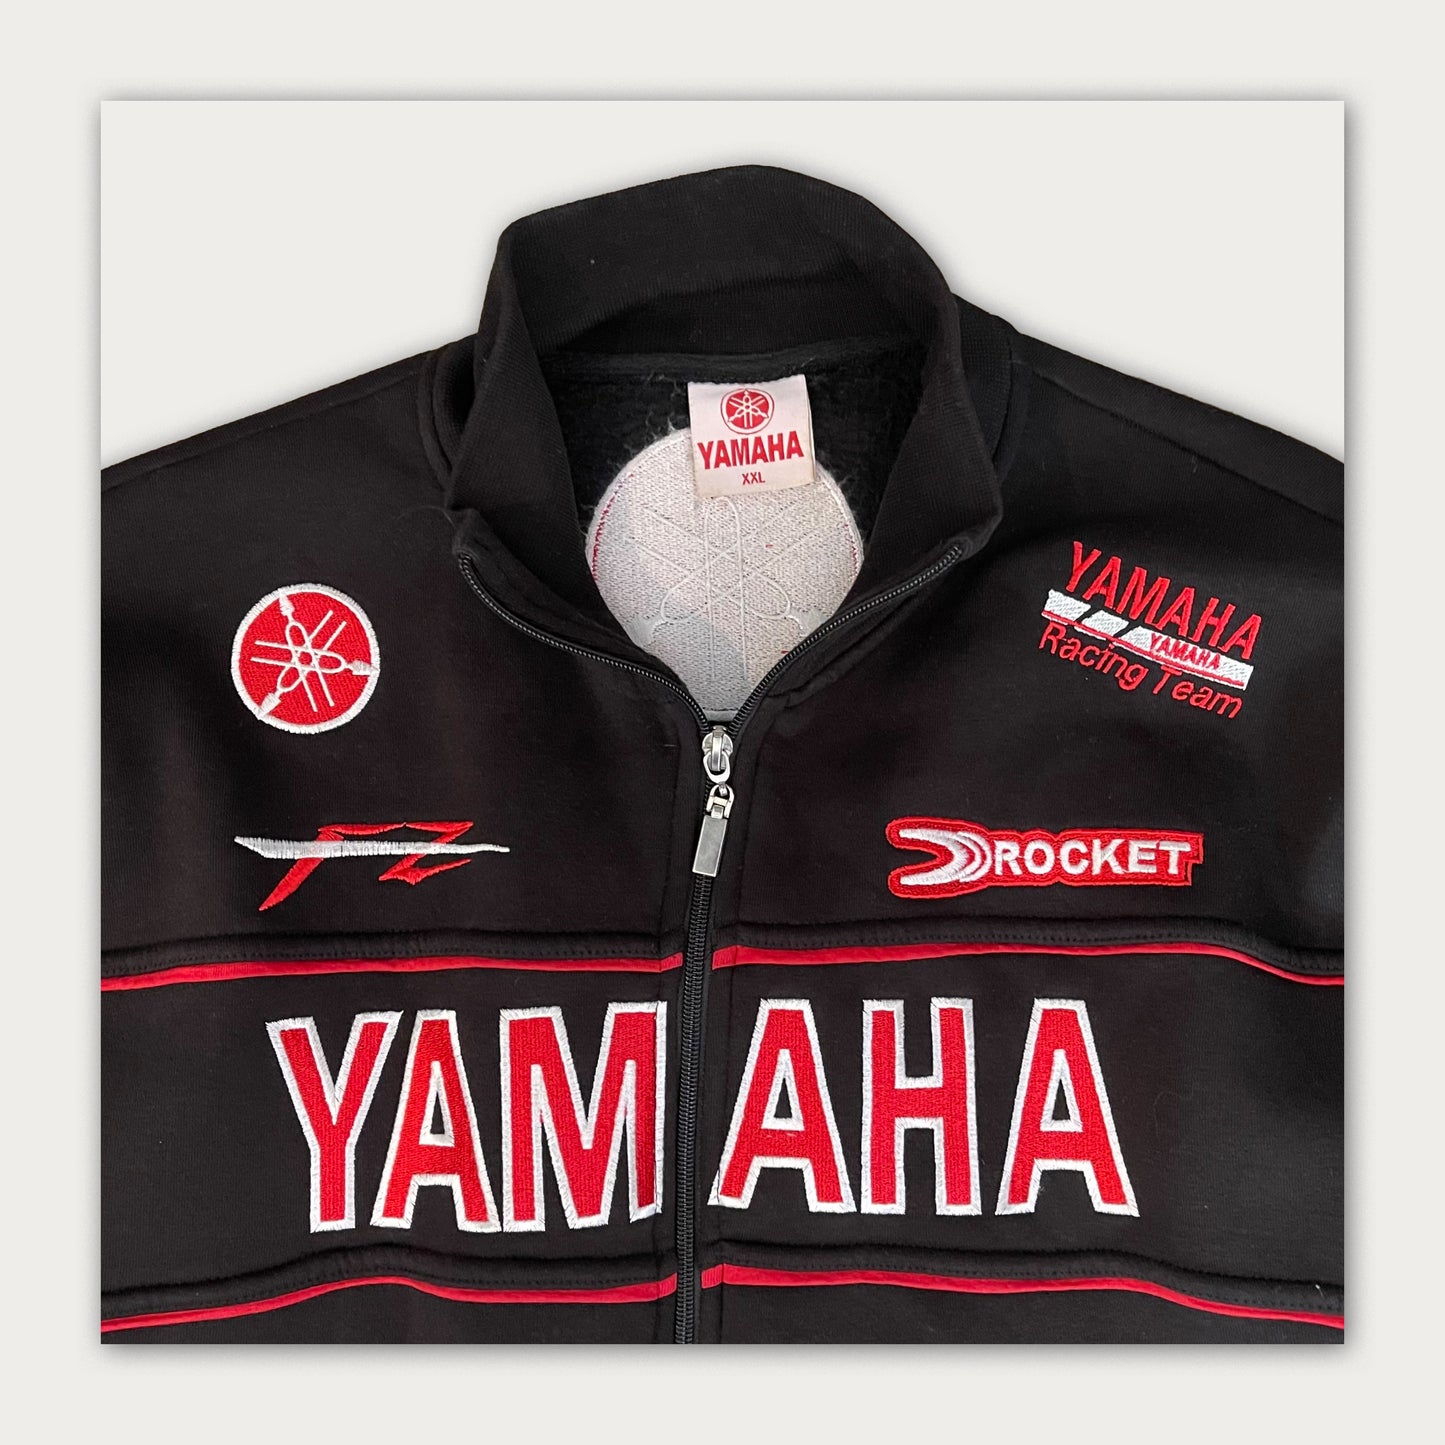 Yamaha Sweatshirt